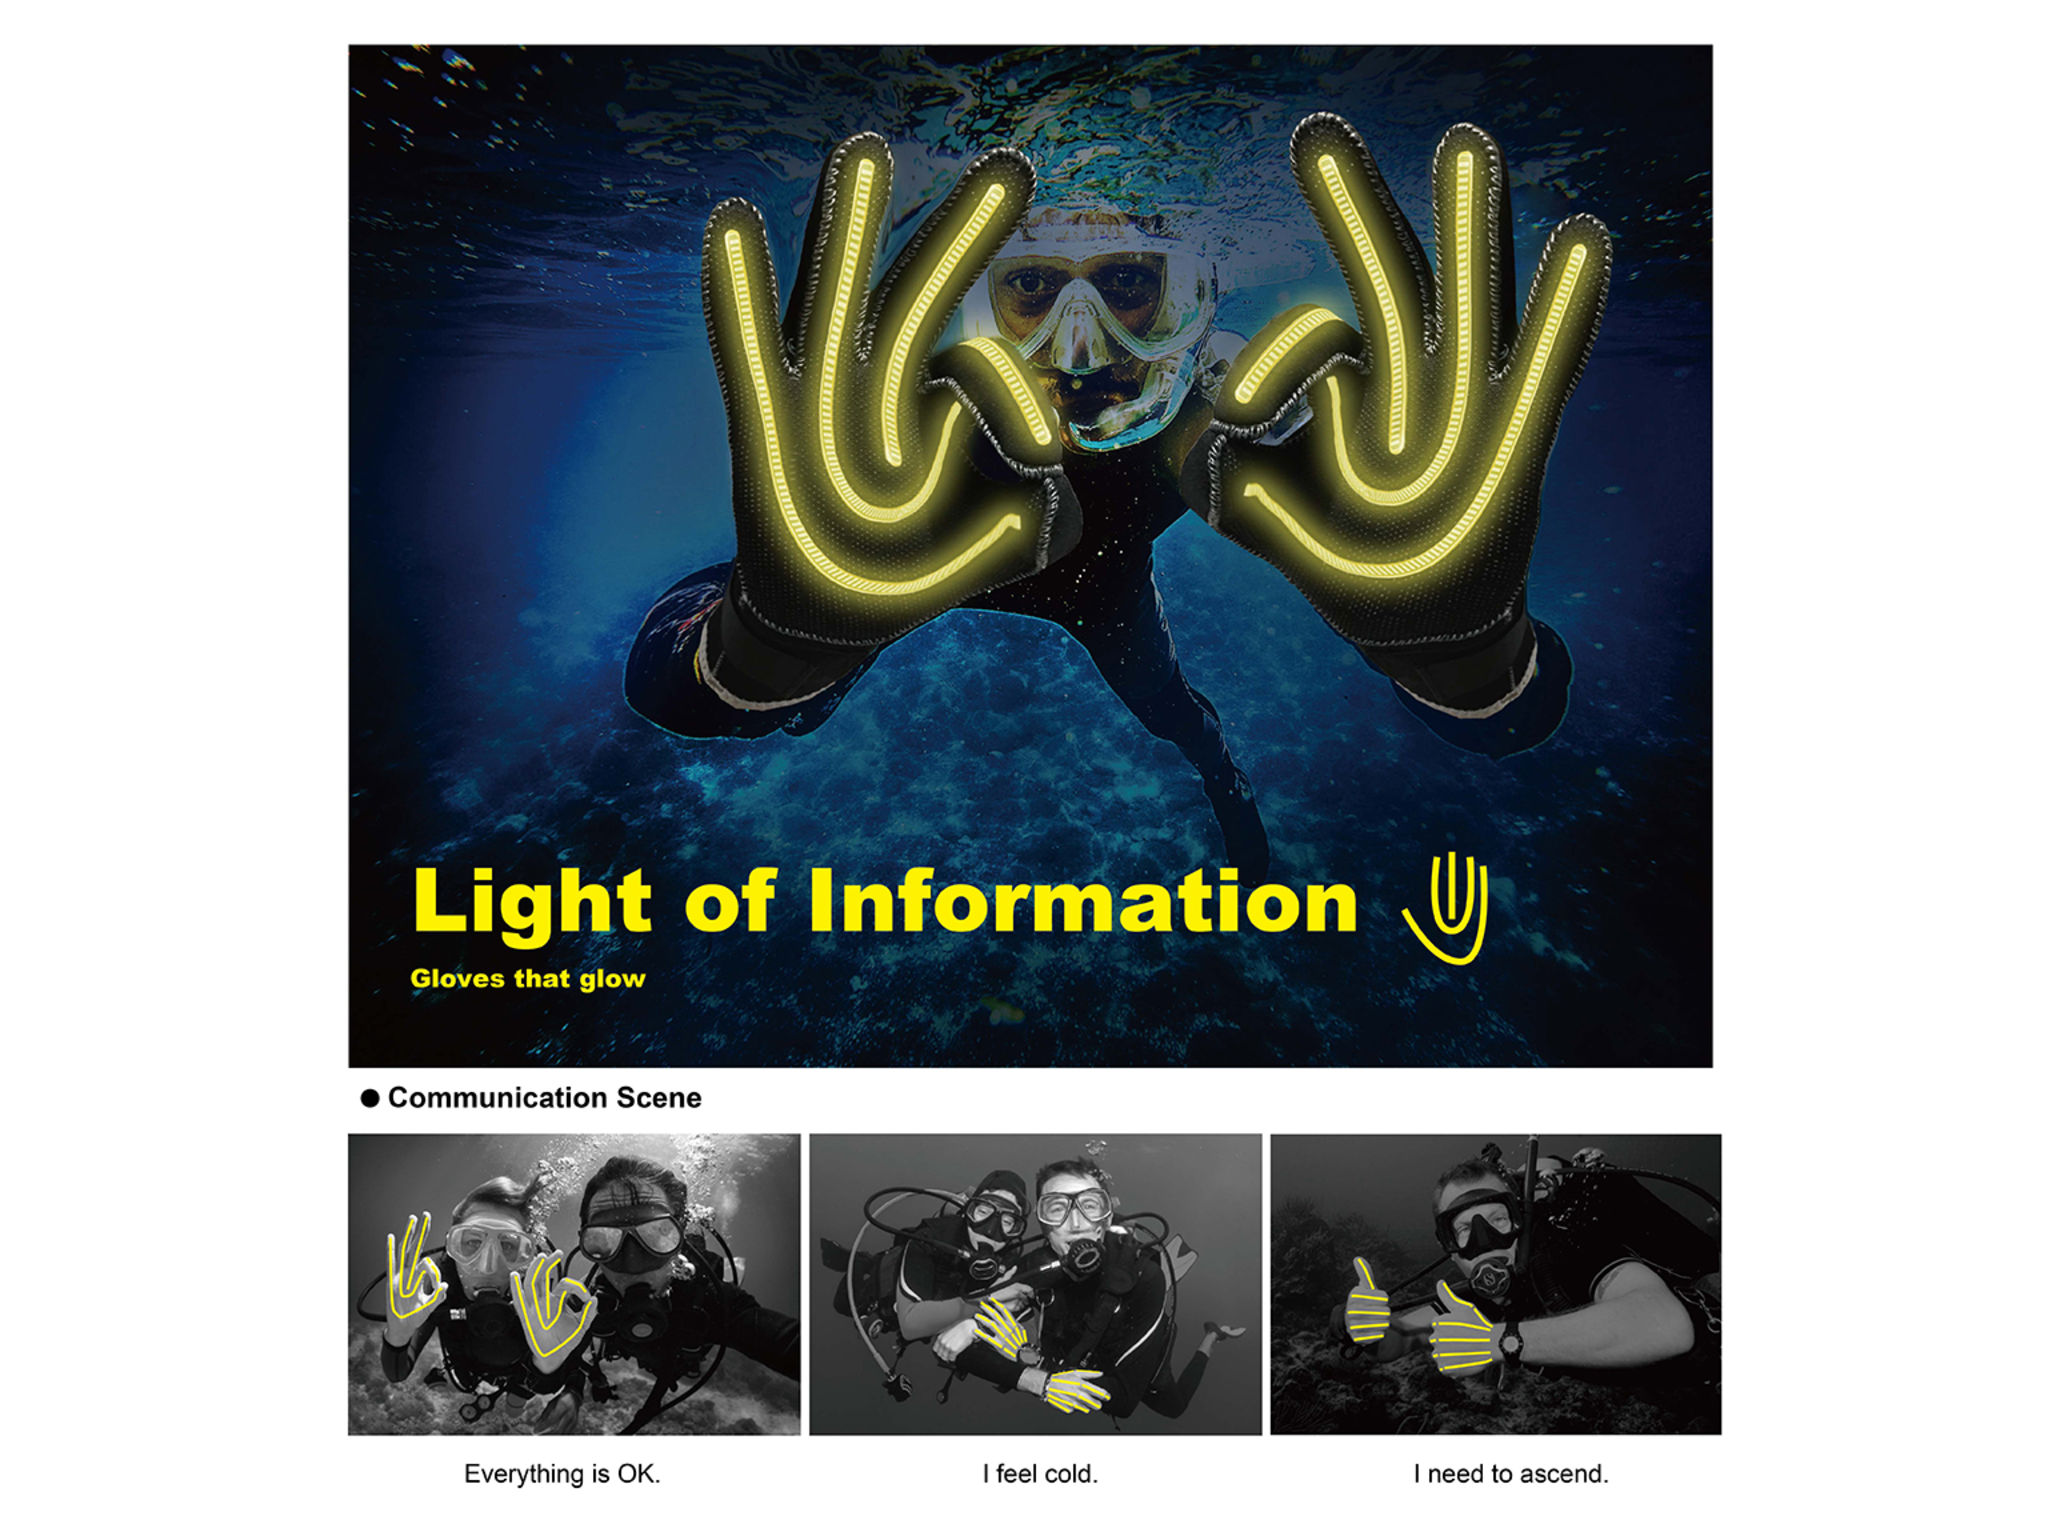 Light of information